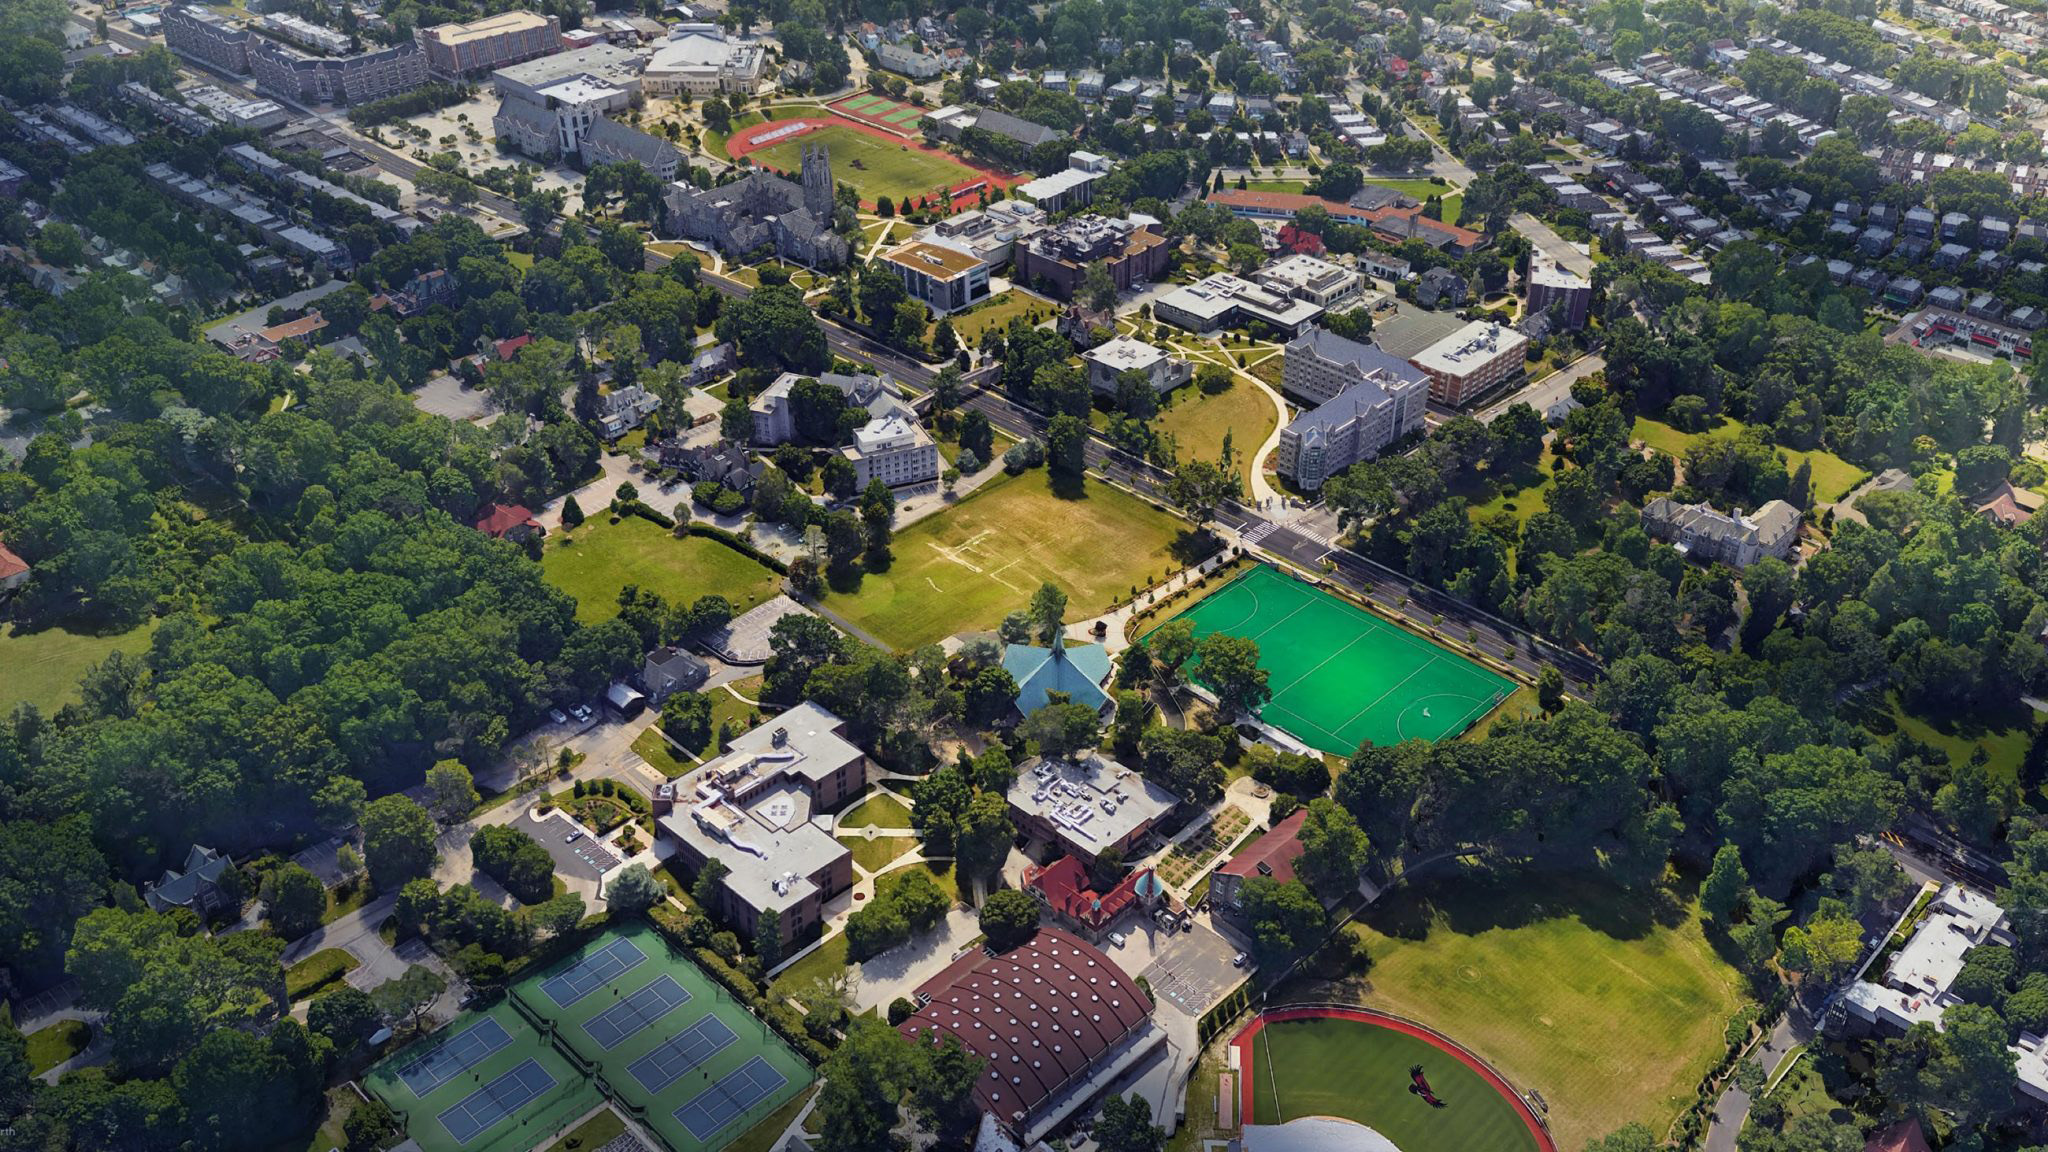 Saint Joseph's University Campus in 2021